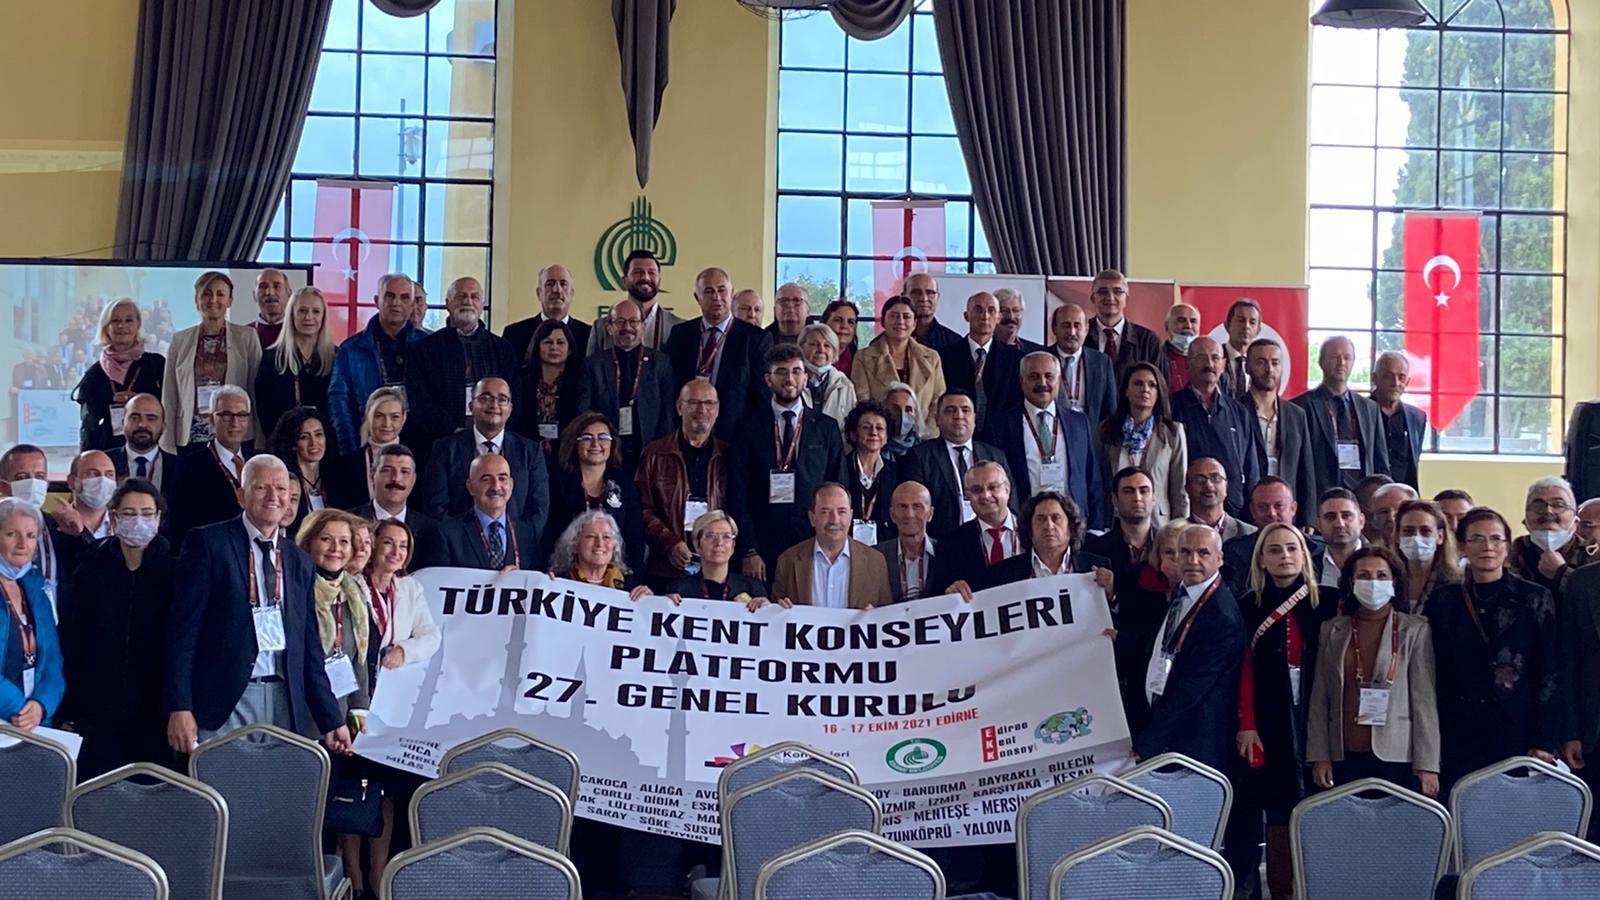 Türkiye Kent Konseyleri Platformu 27. Genel Kurulu Gerçekleştirildi